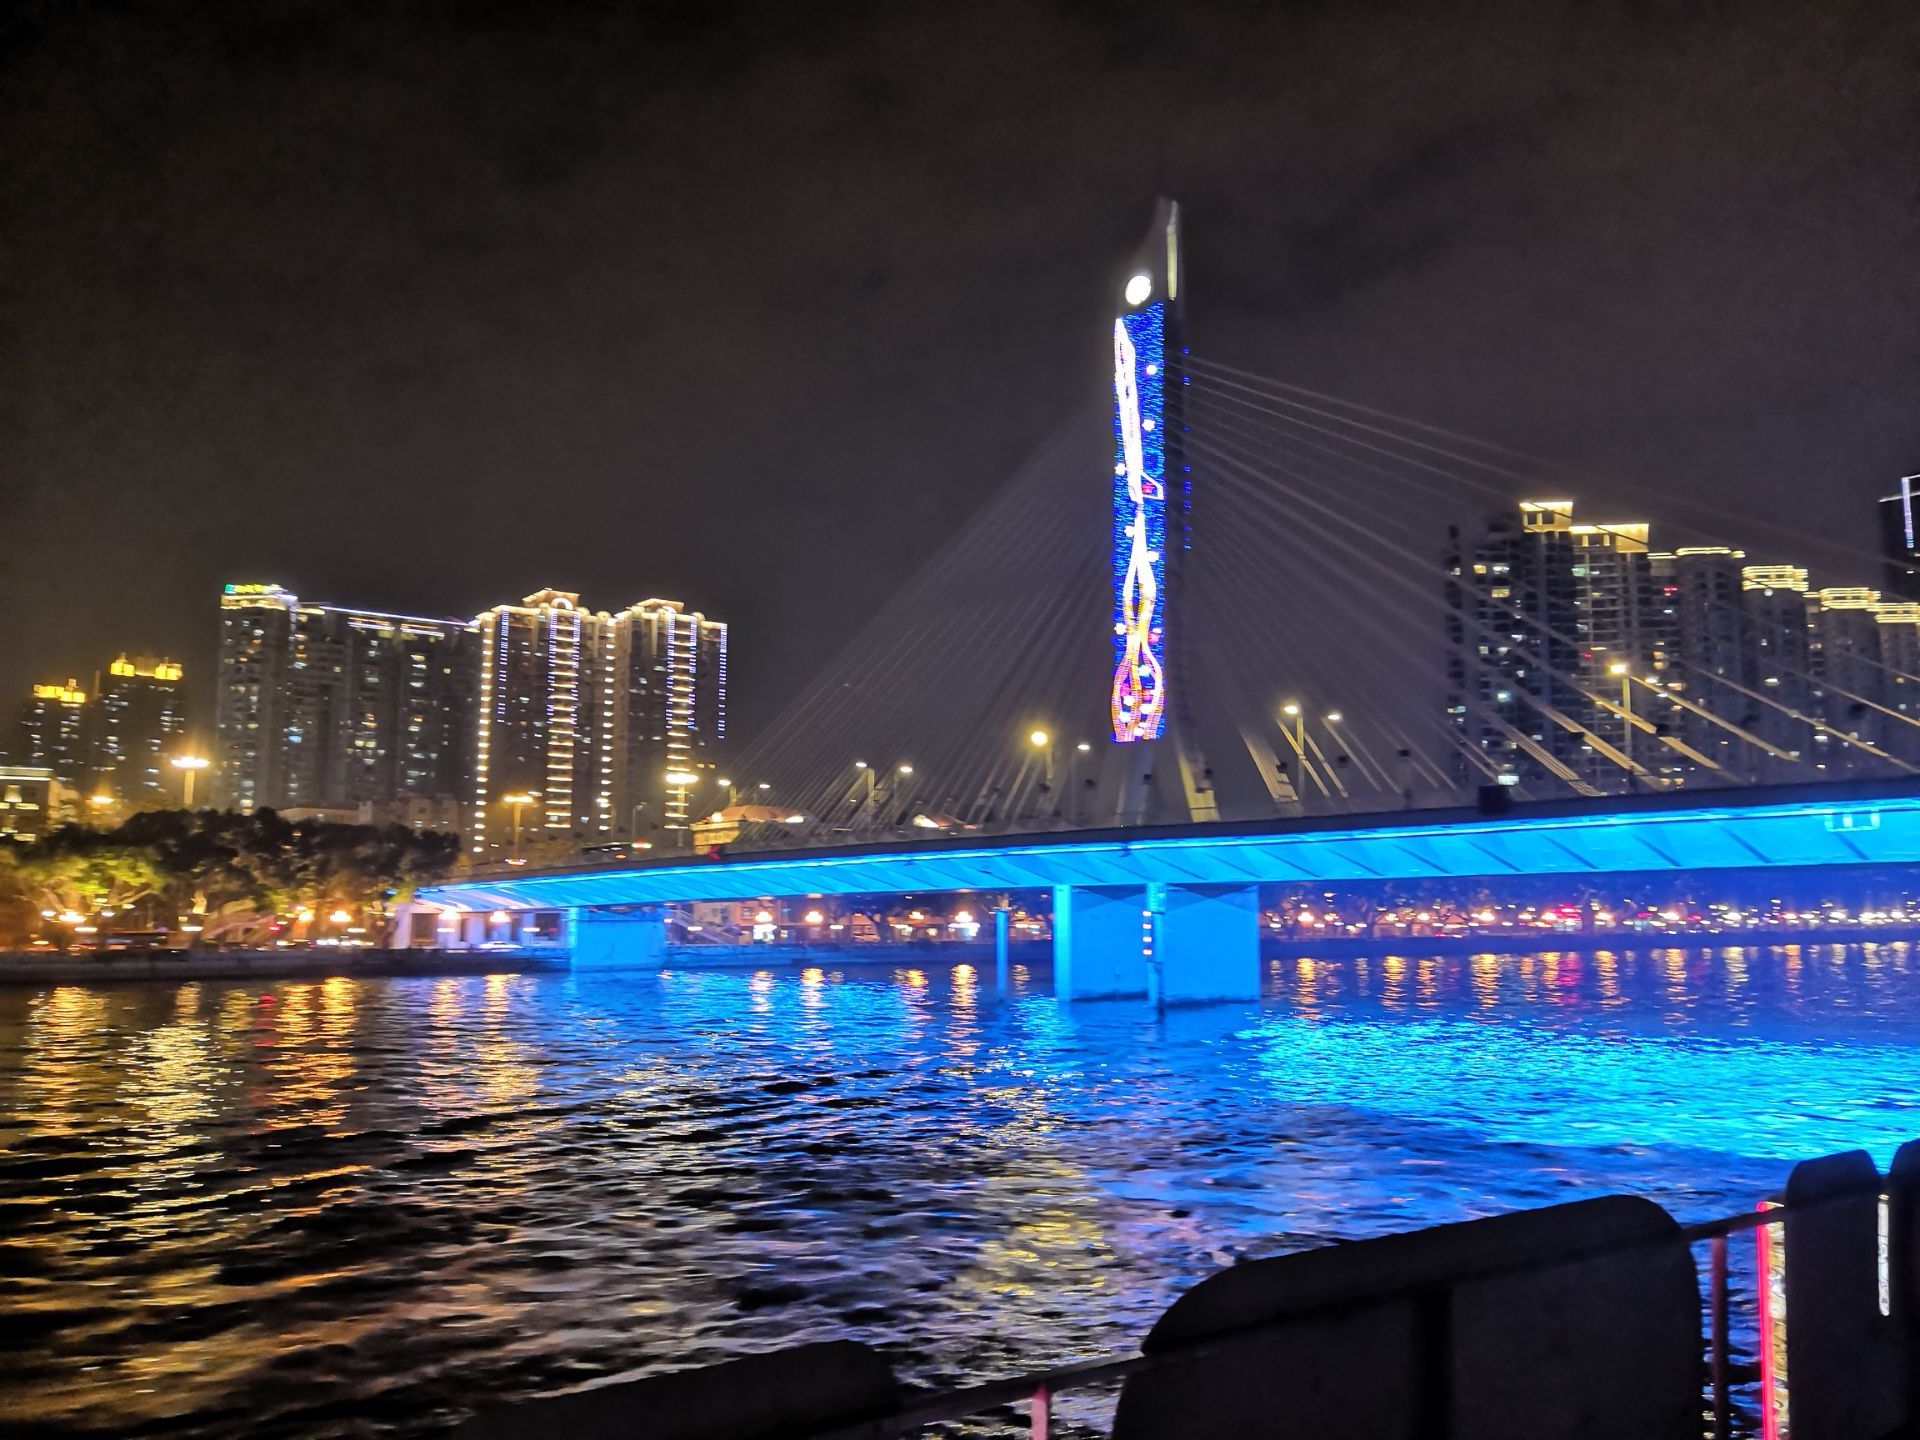 广州珠江夜游 - Klook客路 中国